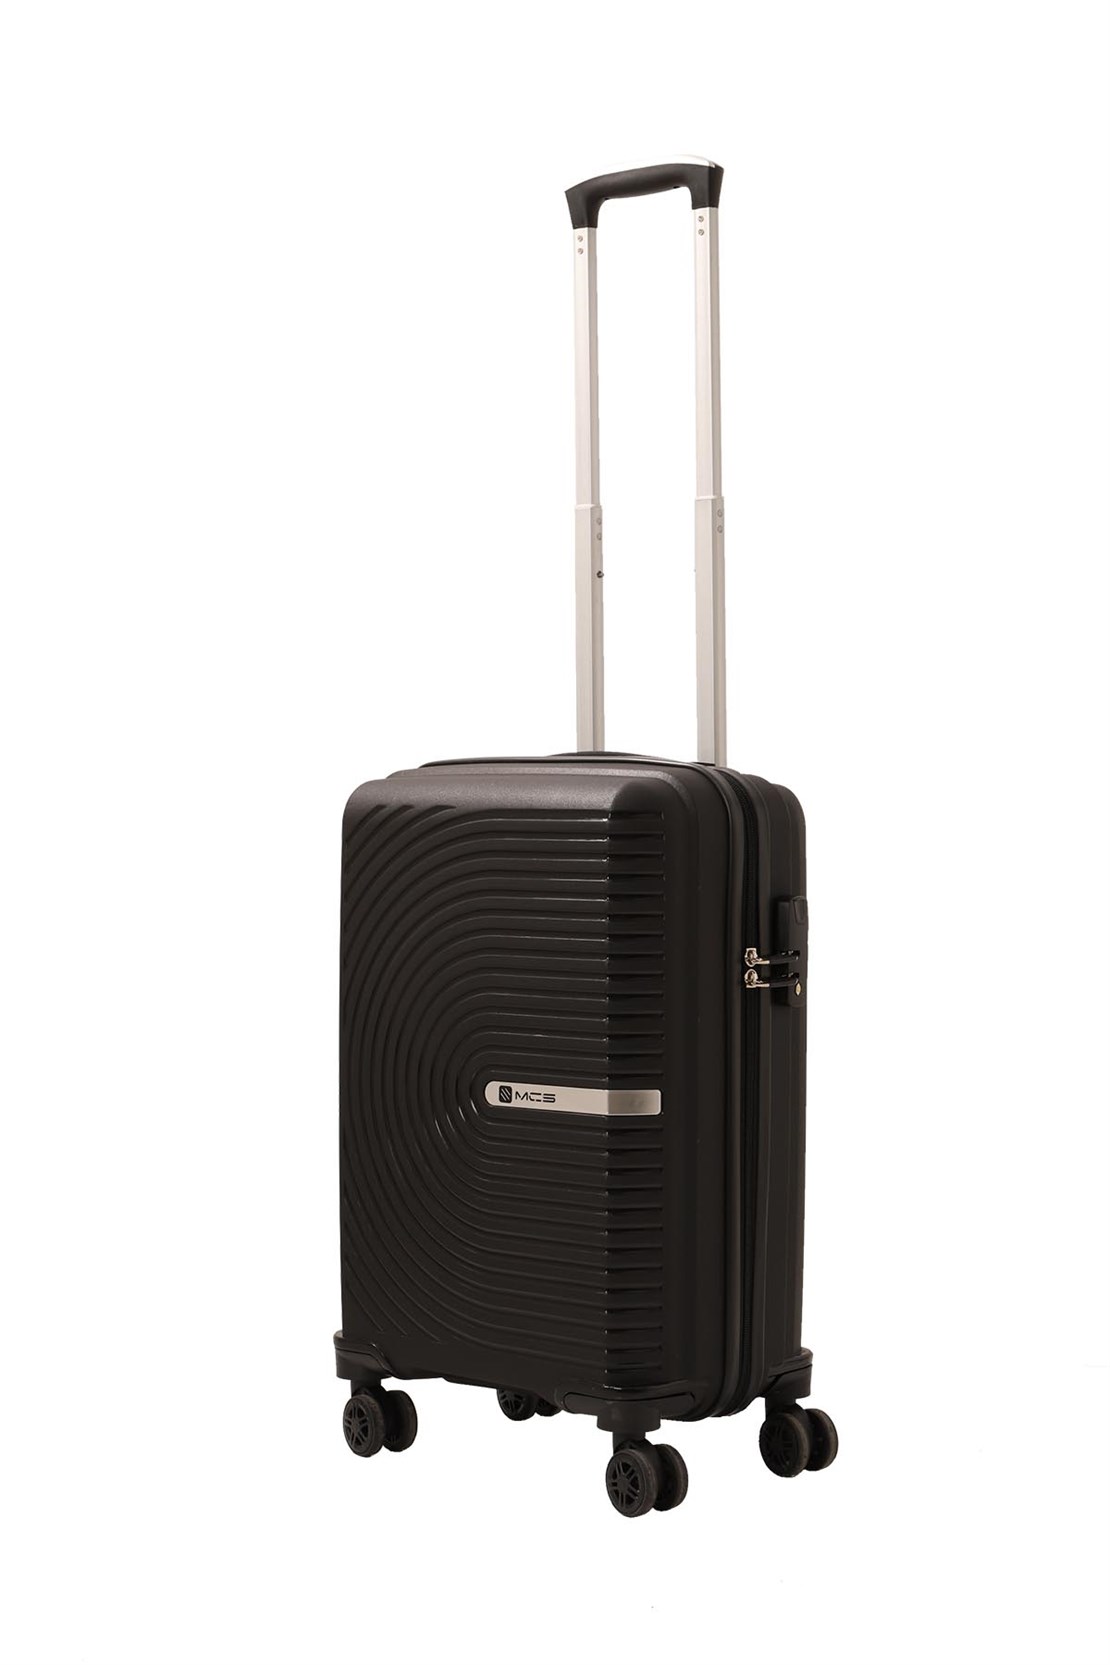 Дорожный малый полипропиленовый чемодан под ручную кладь MCS v374 S - 1